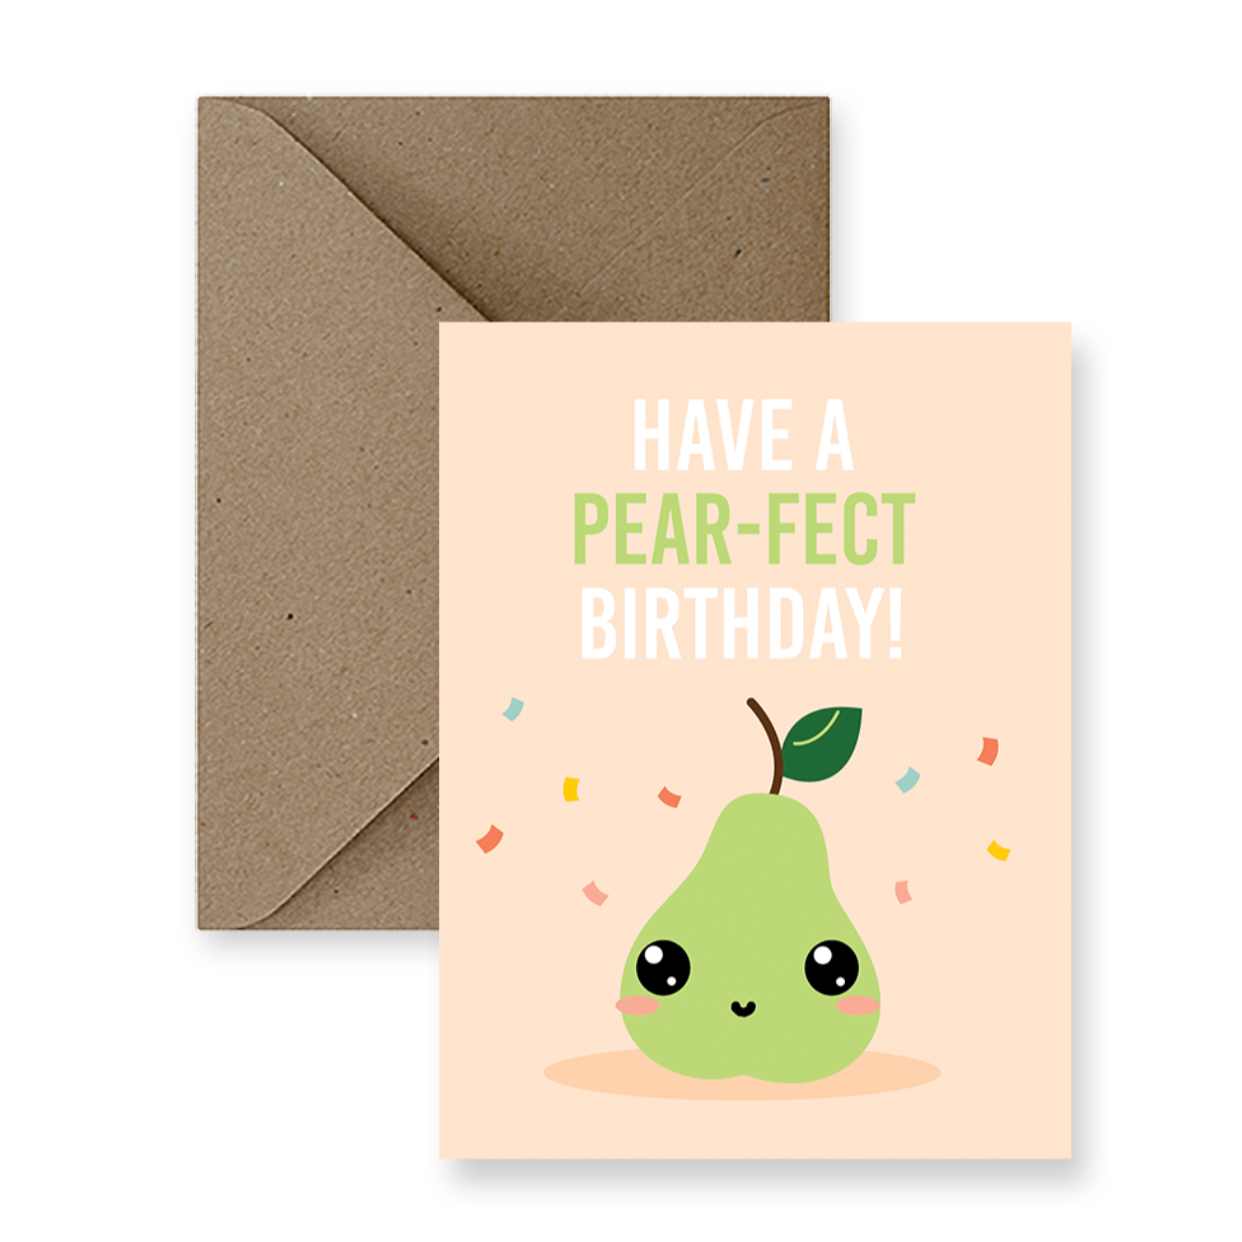 Greeting Card - Pear-fect Birthday